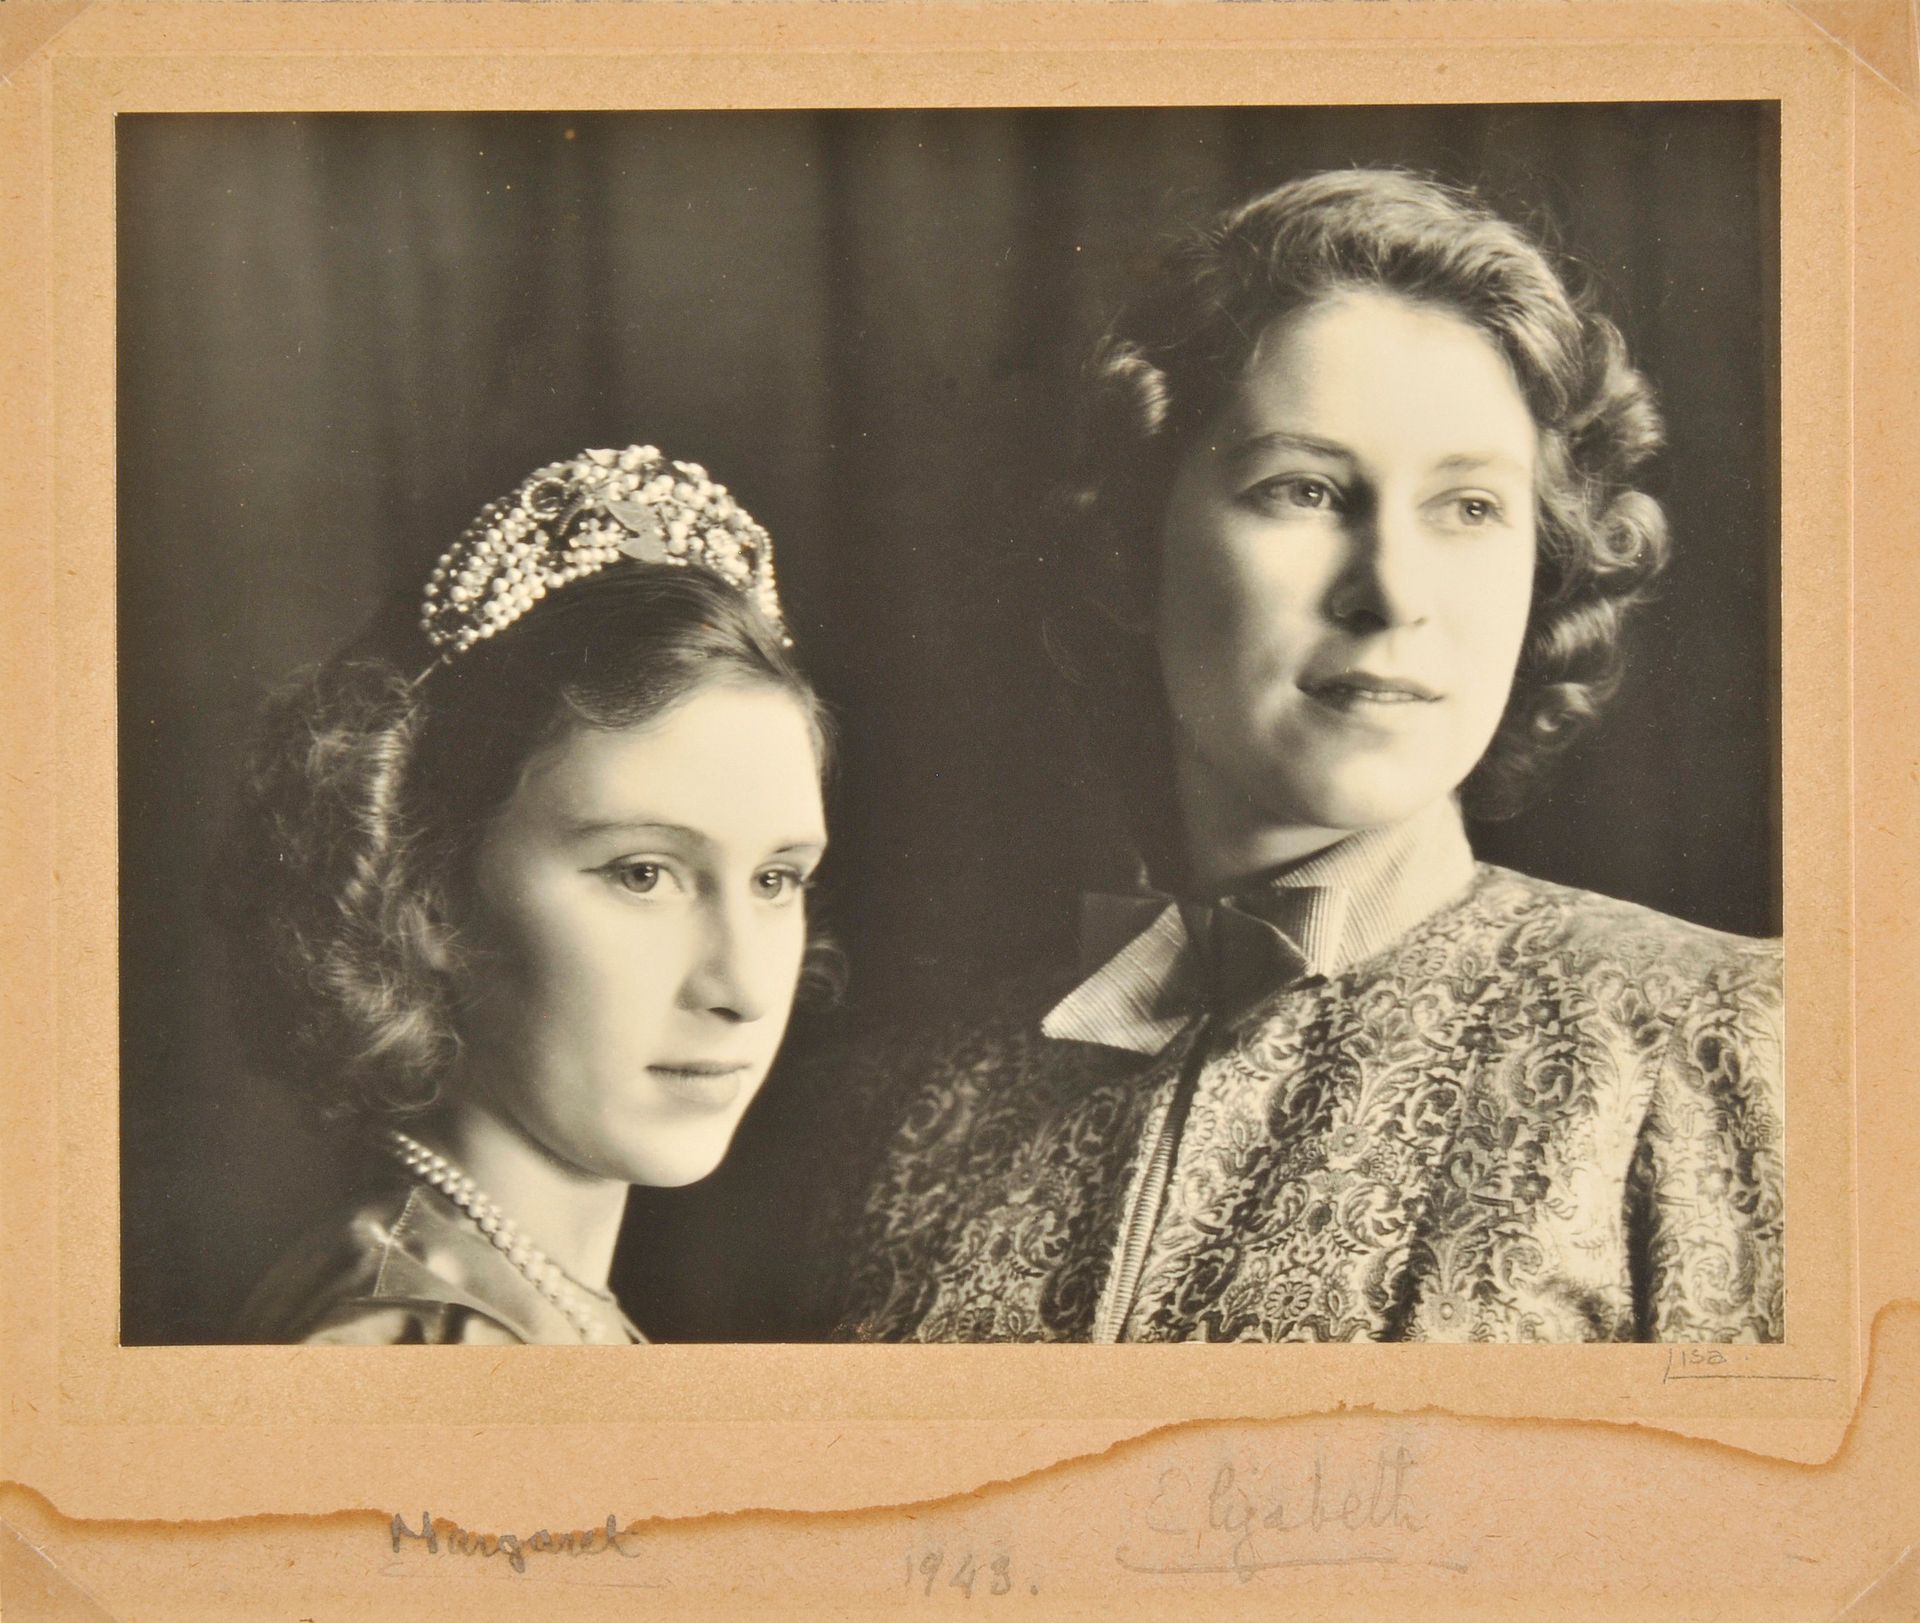 Elizabeth en haar zusje Margaret als tieners, tijdens de uitvoering van Alladin in 1943.